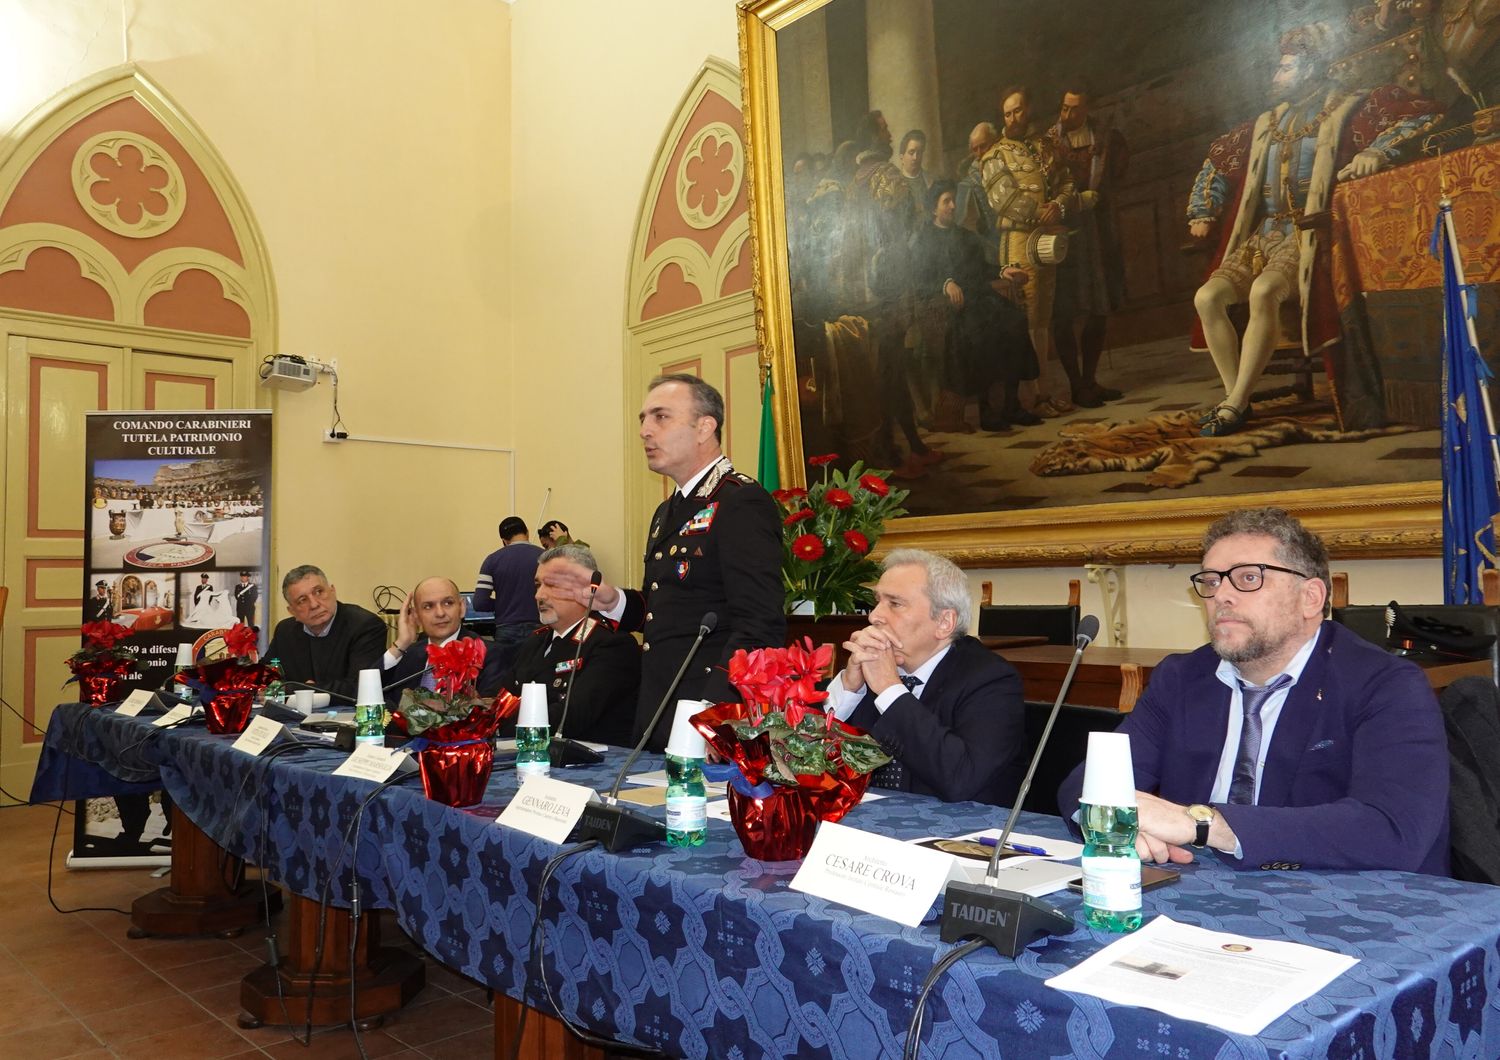 Conferenza stampa dei carabinieri sulla restituzione di reperti  sottratti dai nazisti